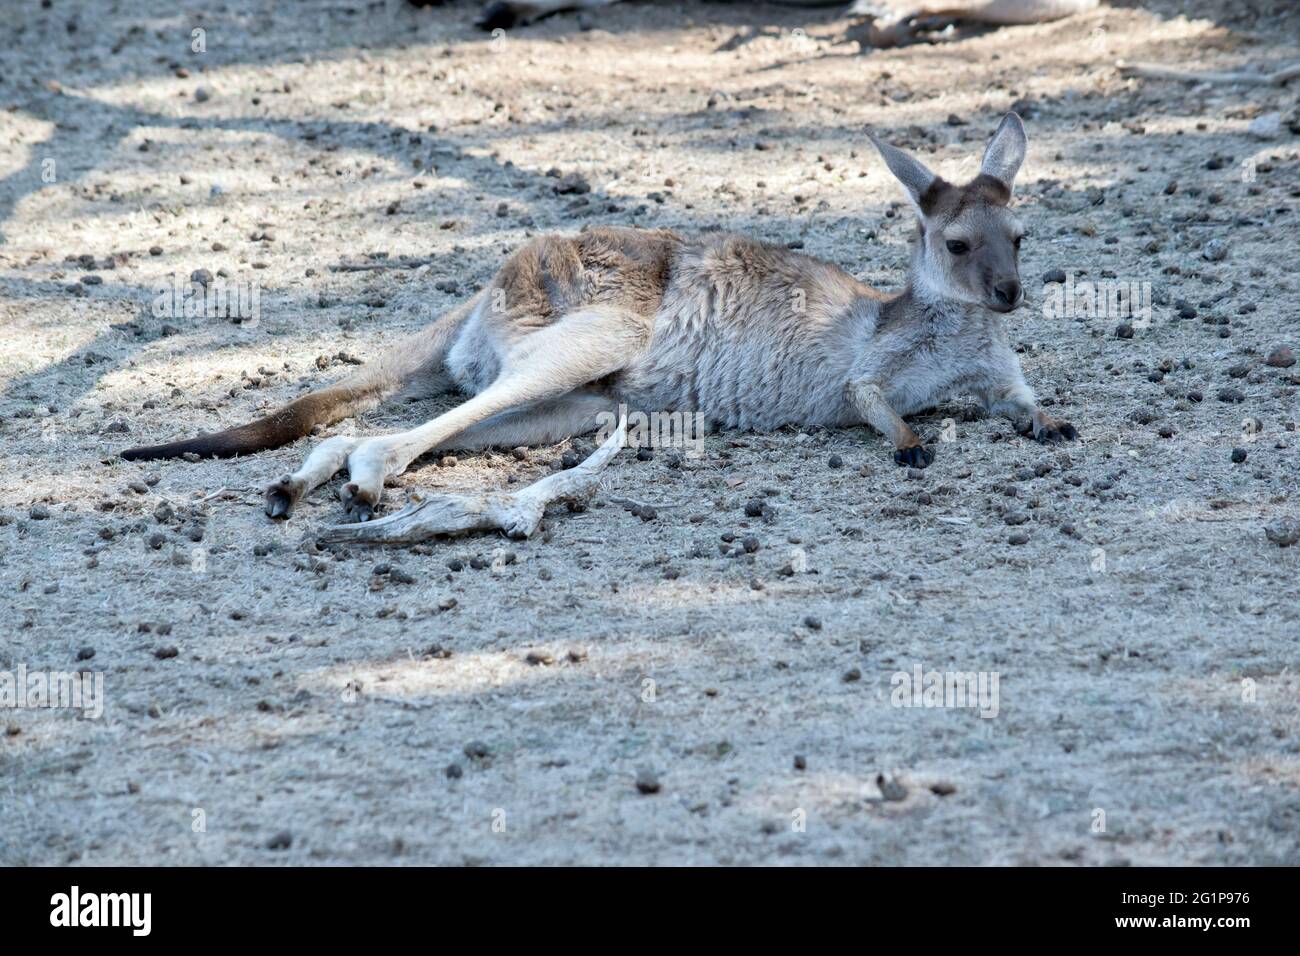 c'est un jeune kangourou gris occidental Banque D'Images